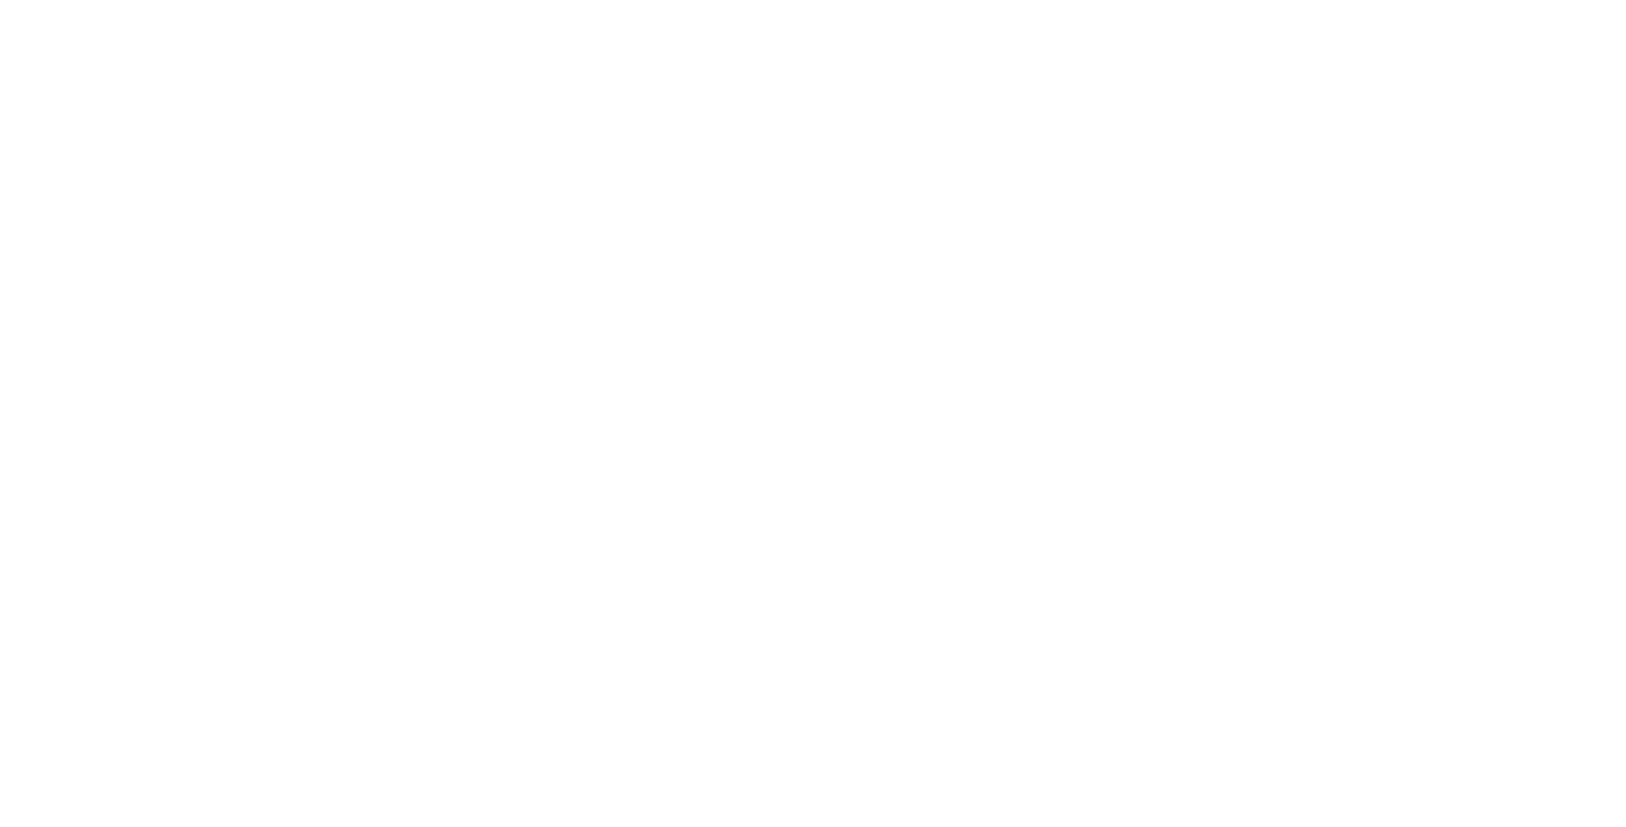 eddie's tex-mex cocina